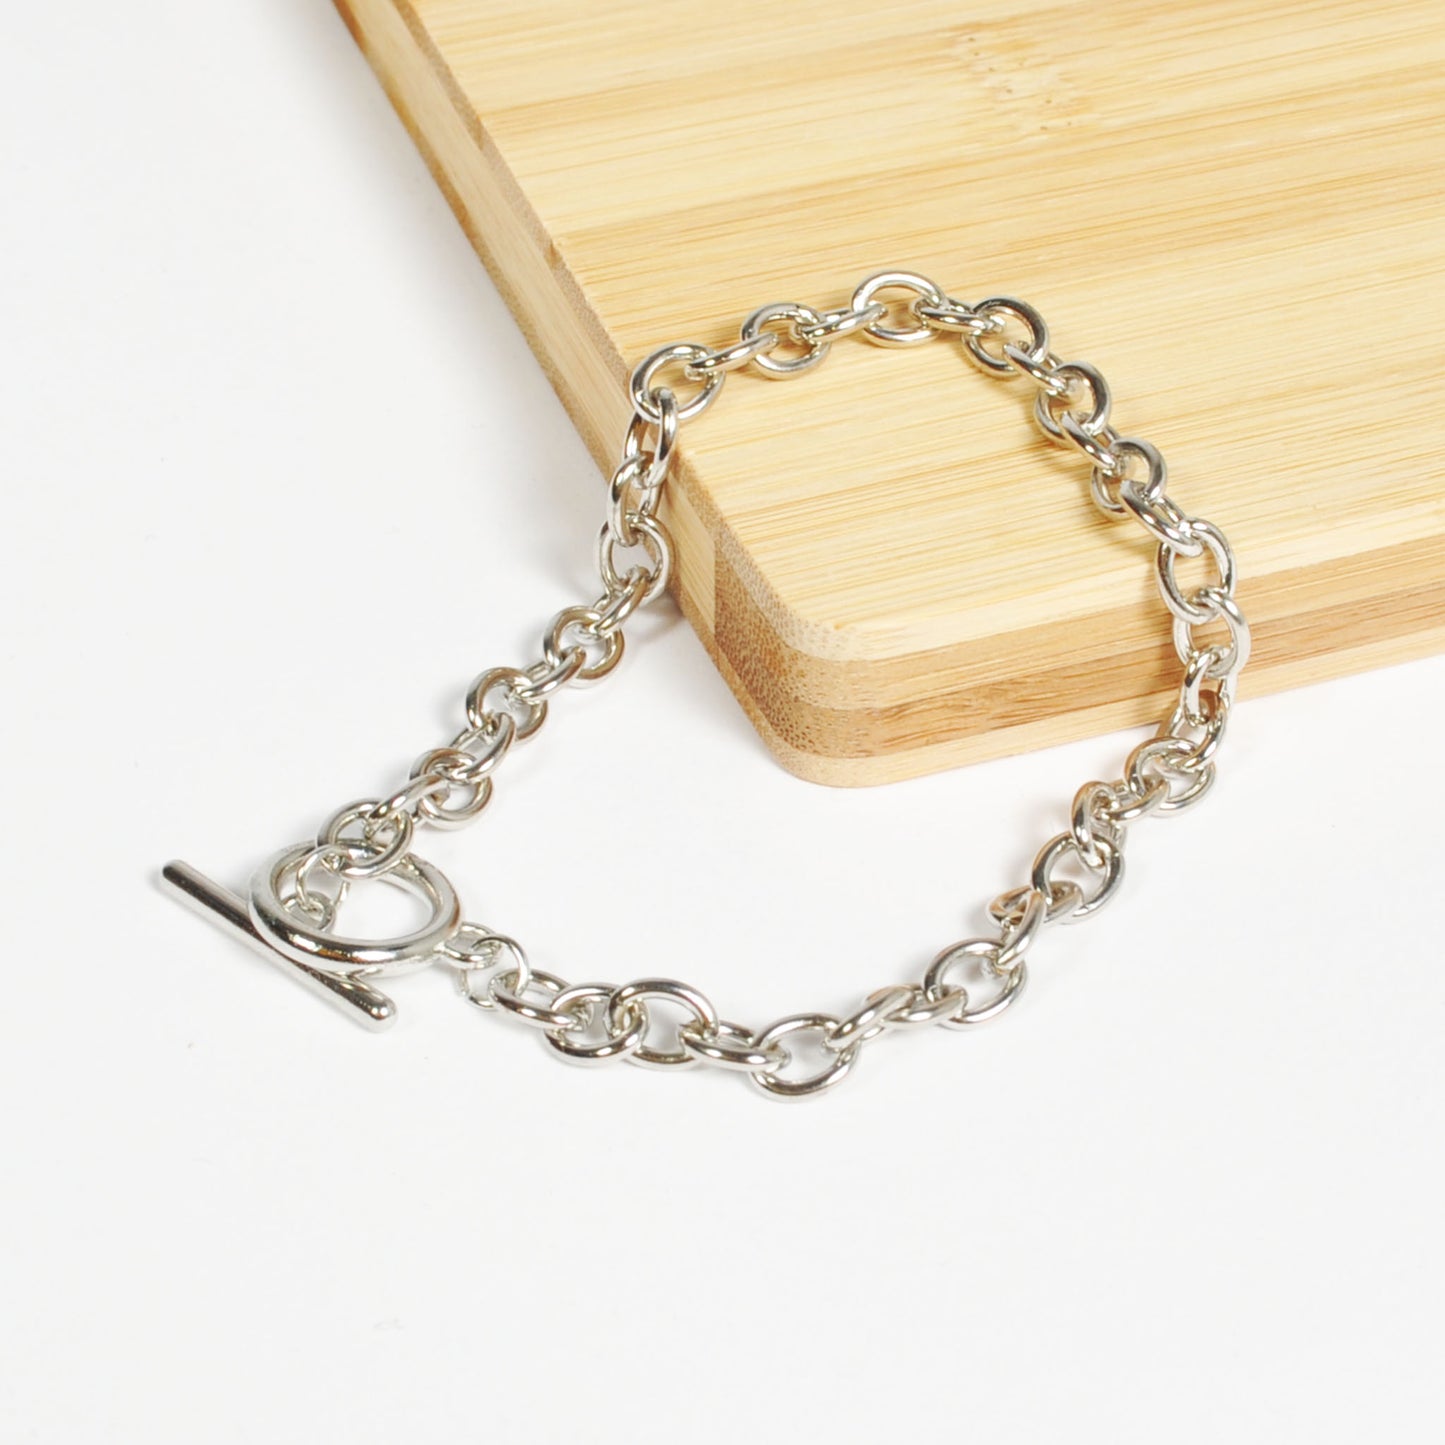 Silver T-Bar Bracelet